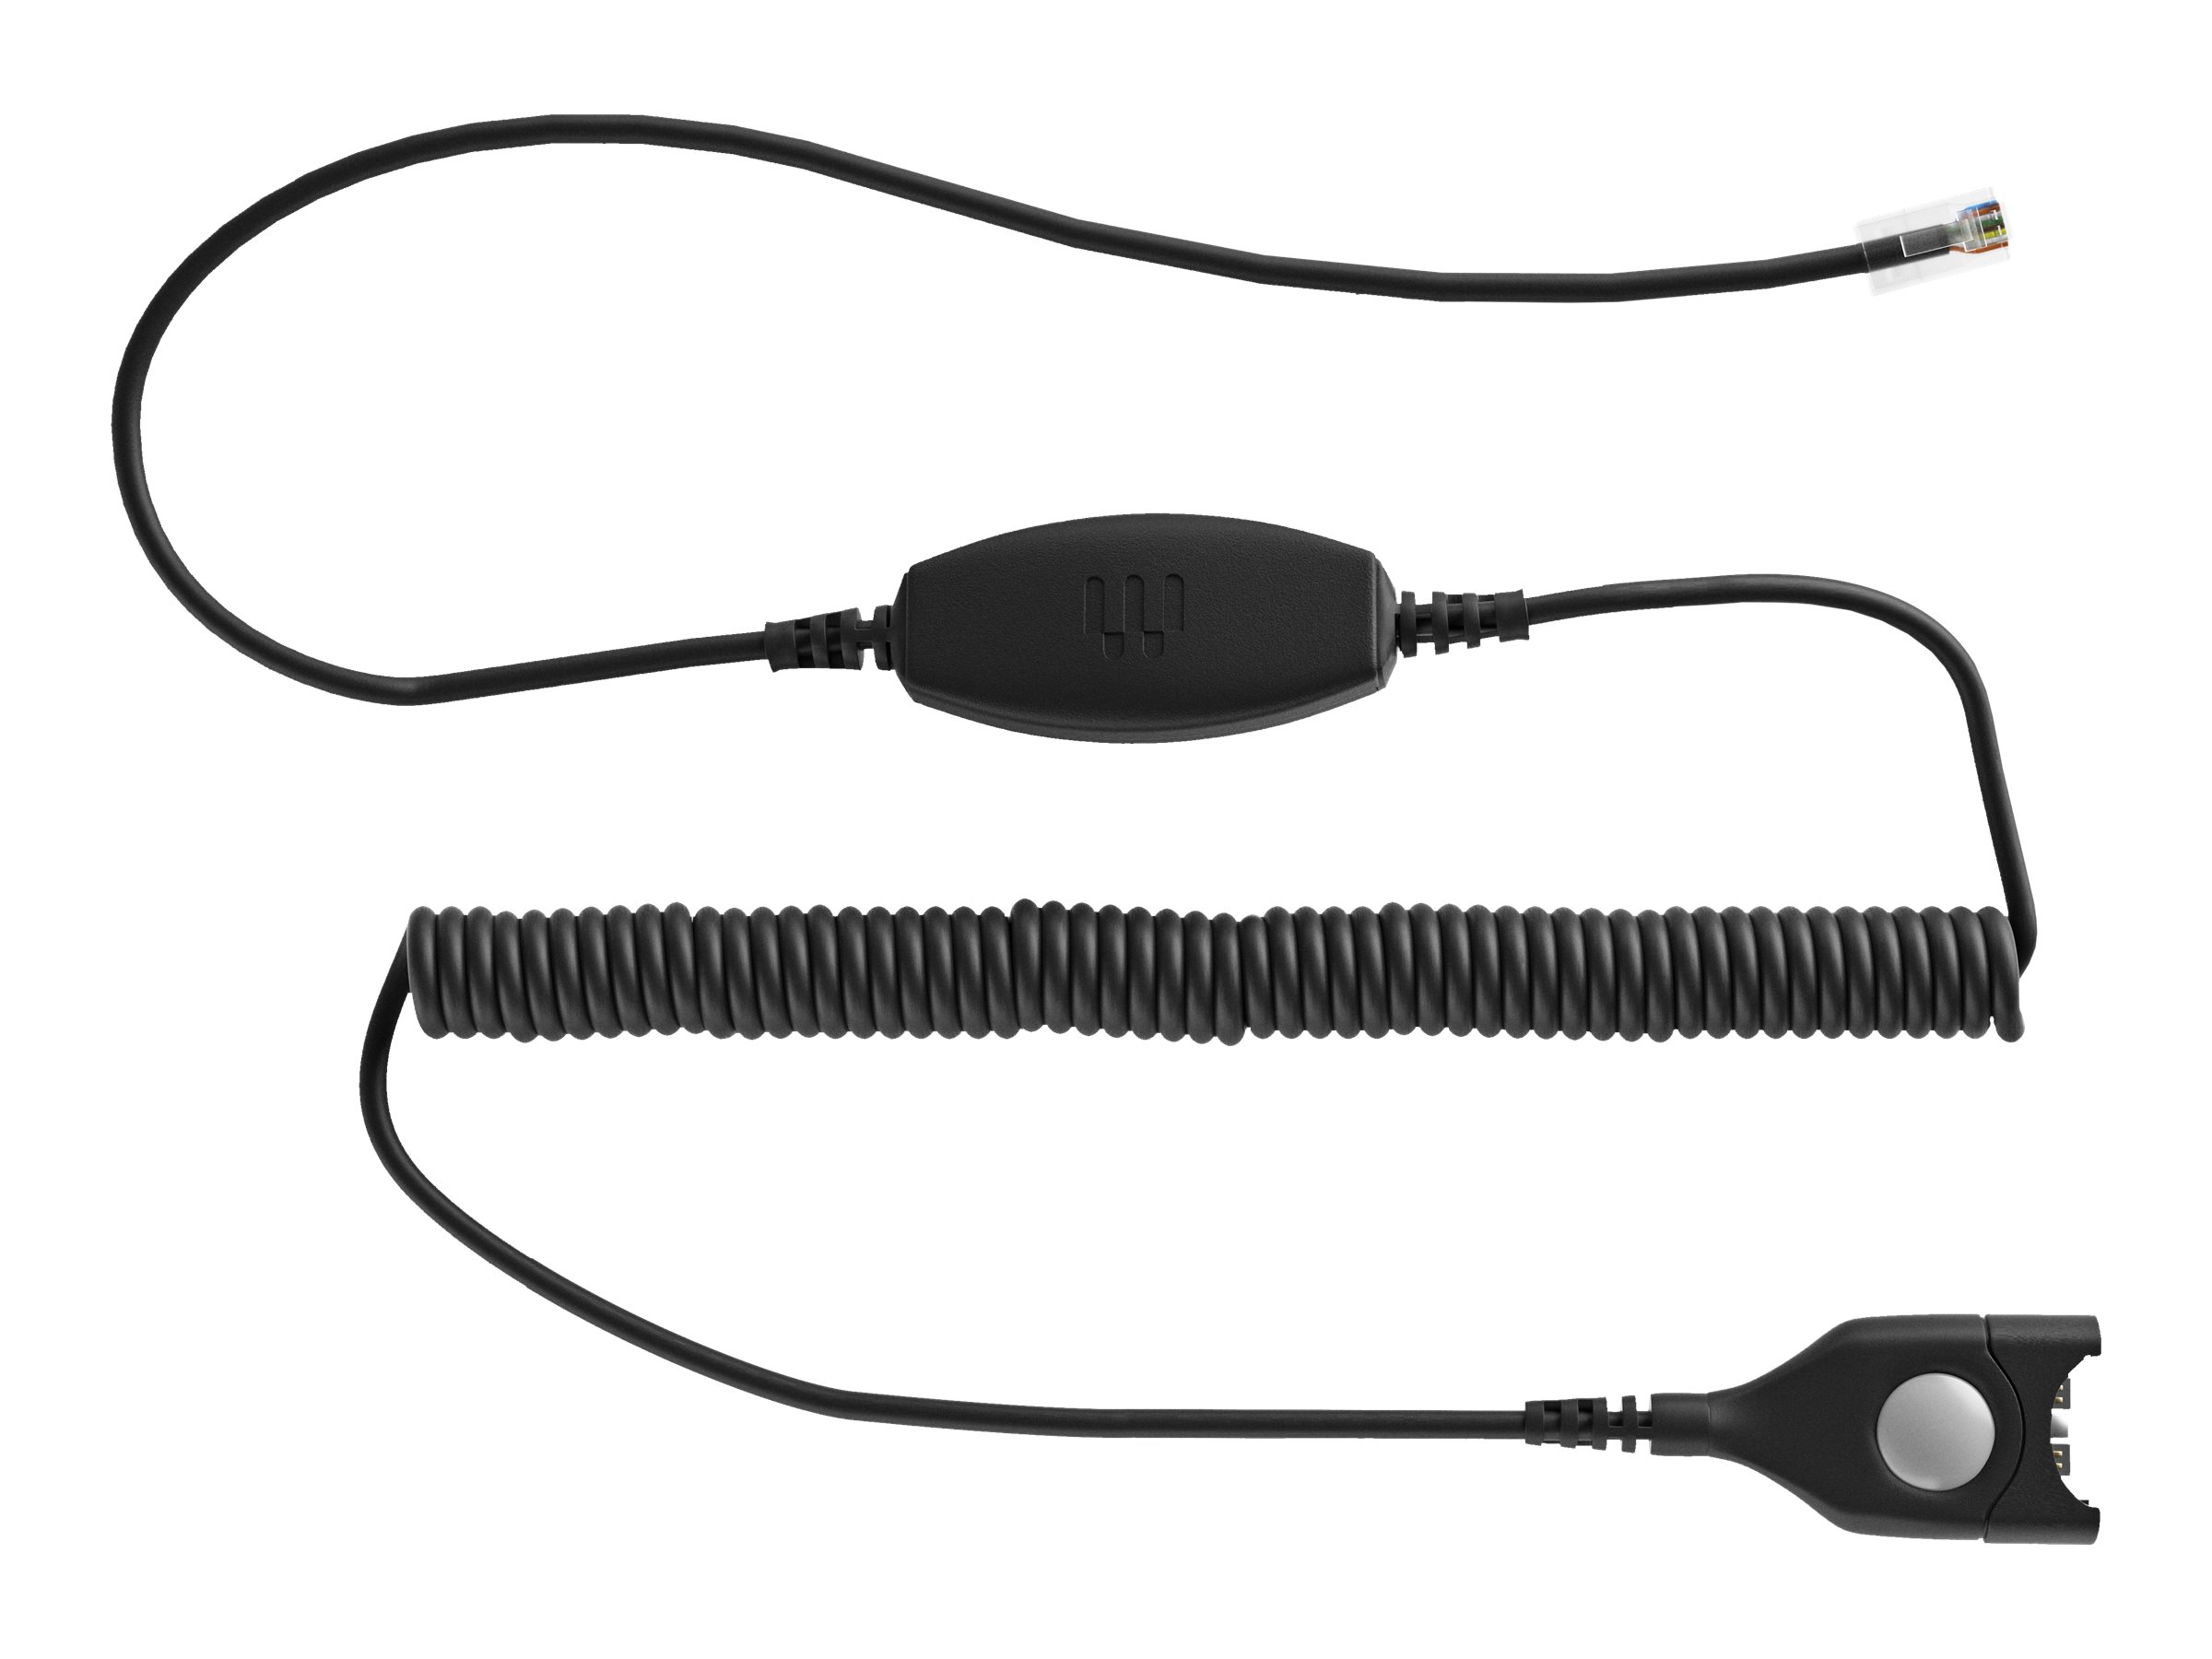 EPOS CLS 24 - Câble pour casque micro - EasyDisconnect pour RJ-9 mâle - 1000841 - Câbles pour écouteurs